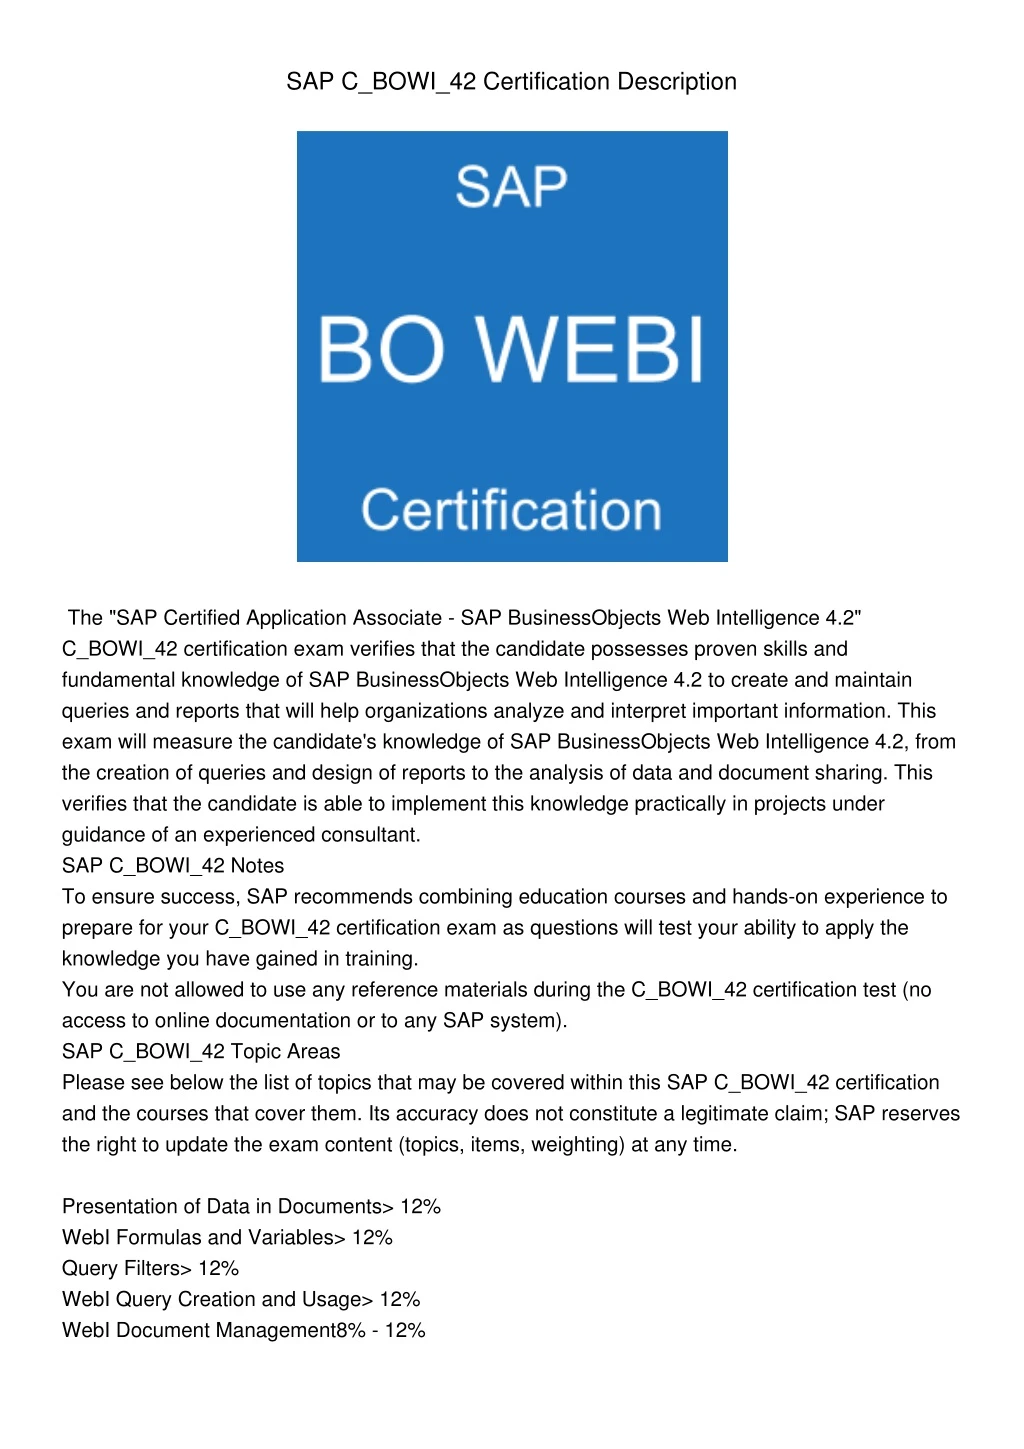 sap c bowi 42 certification description